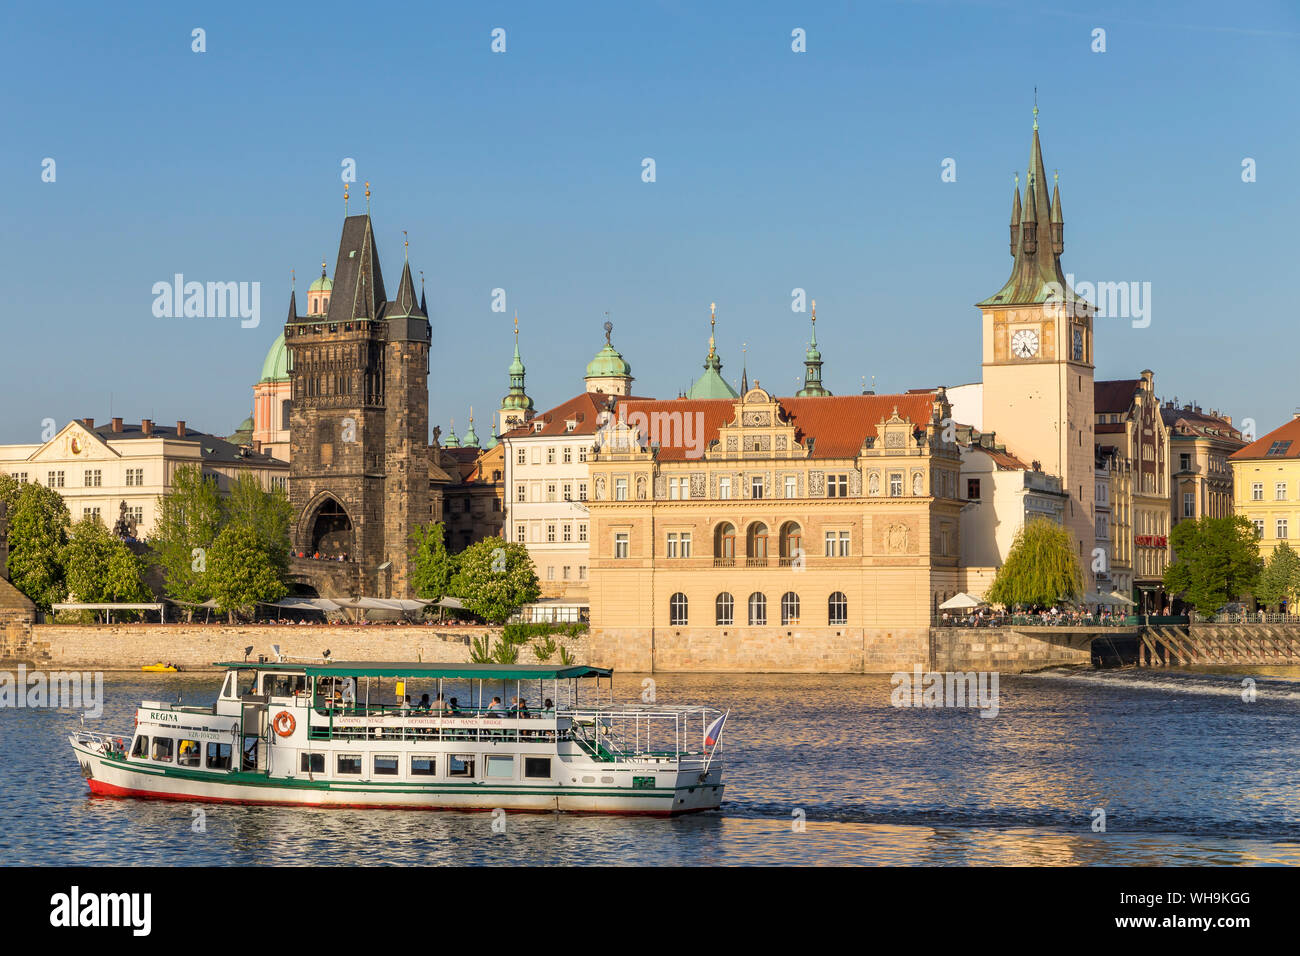 Touristische Bootsfahrt auf der Moldau an den Altstädter Brückenturm und die Altstadt Wasserturm, Prag, Böhmen, Tschechien, Europa Stockfoto